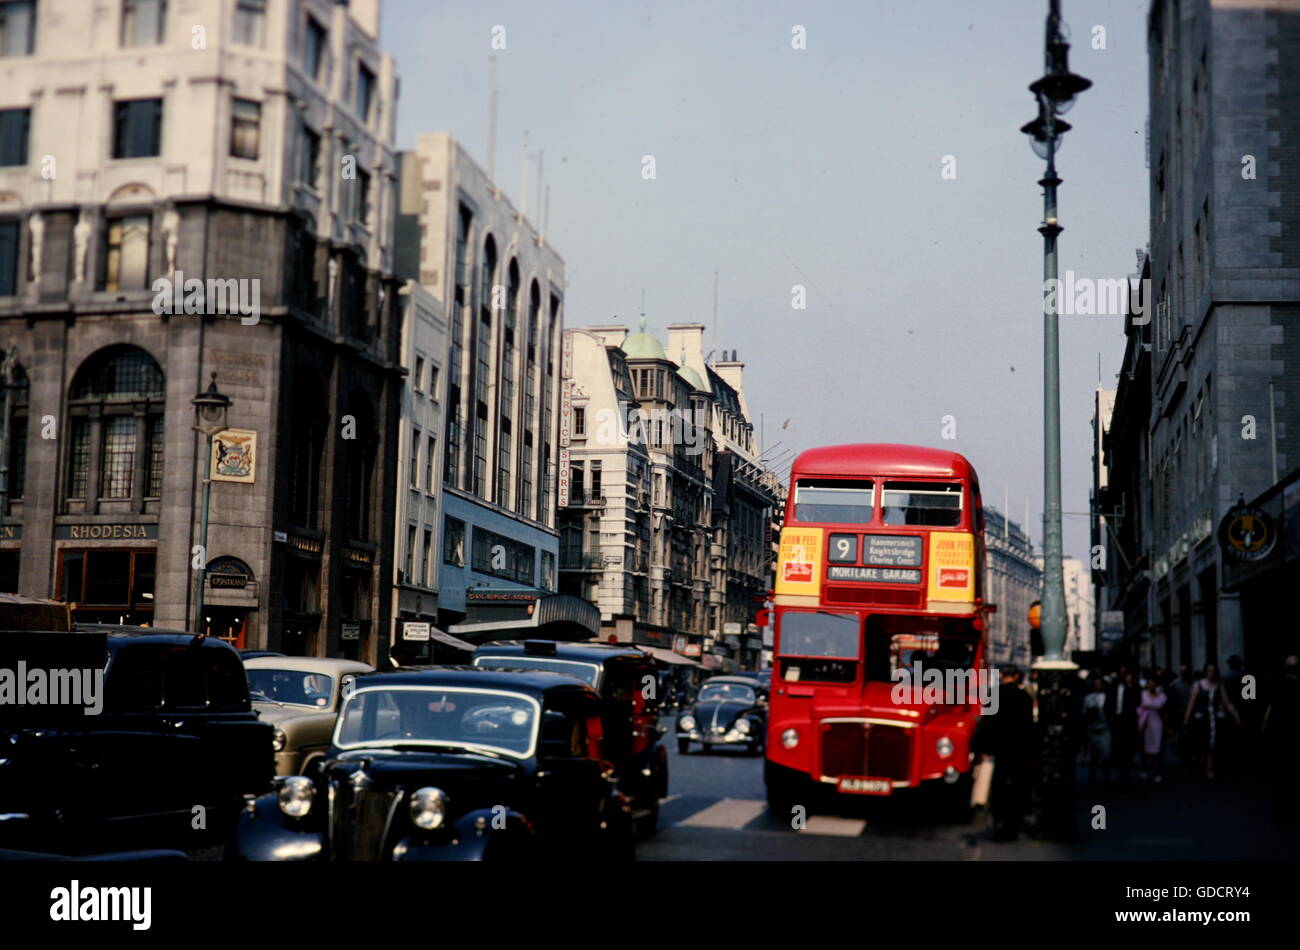 Le Strand, London Routemaster bus à impériale et les voitures et montrant les magasins du Service civil et la Haute Commission de la Rhodésie du Sud en 1964. Photographie par Tony Henshaw. Banque D'Images